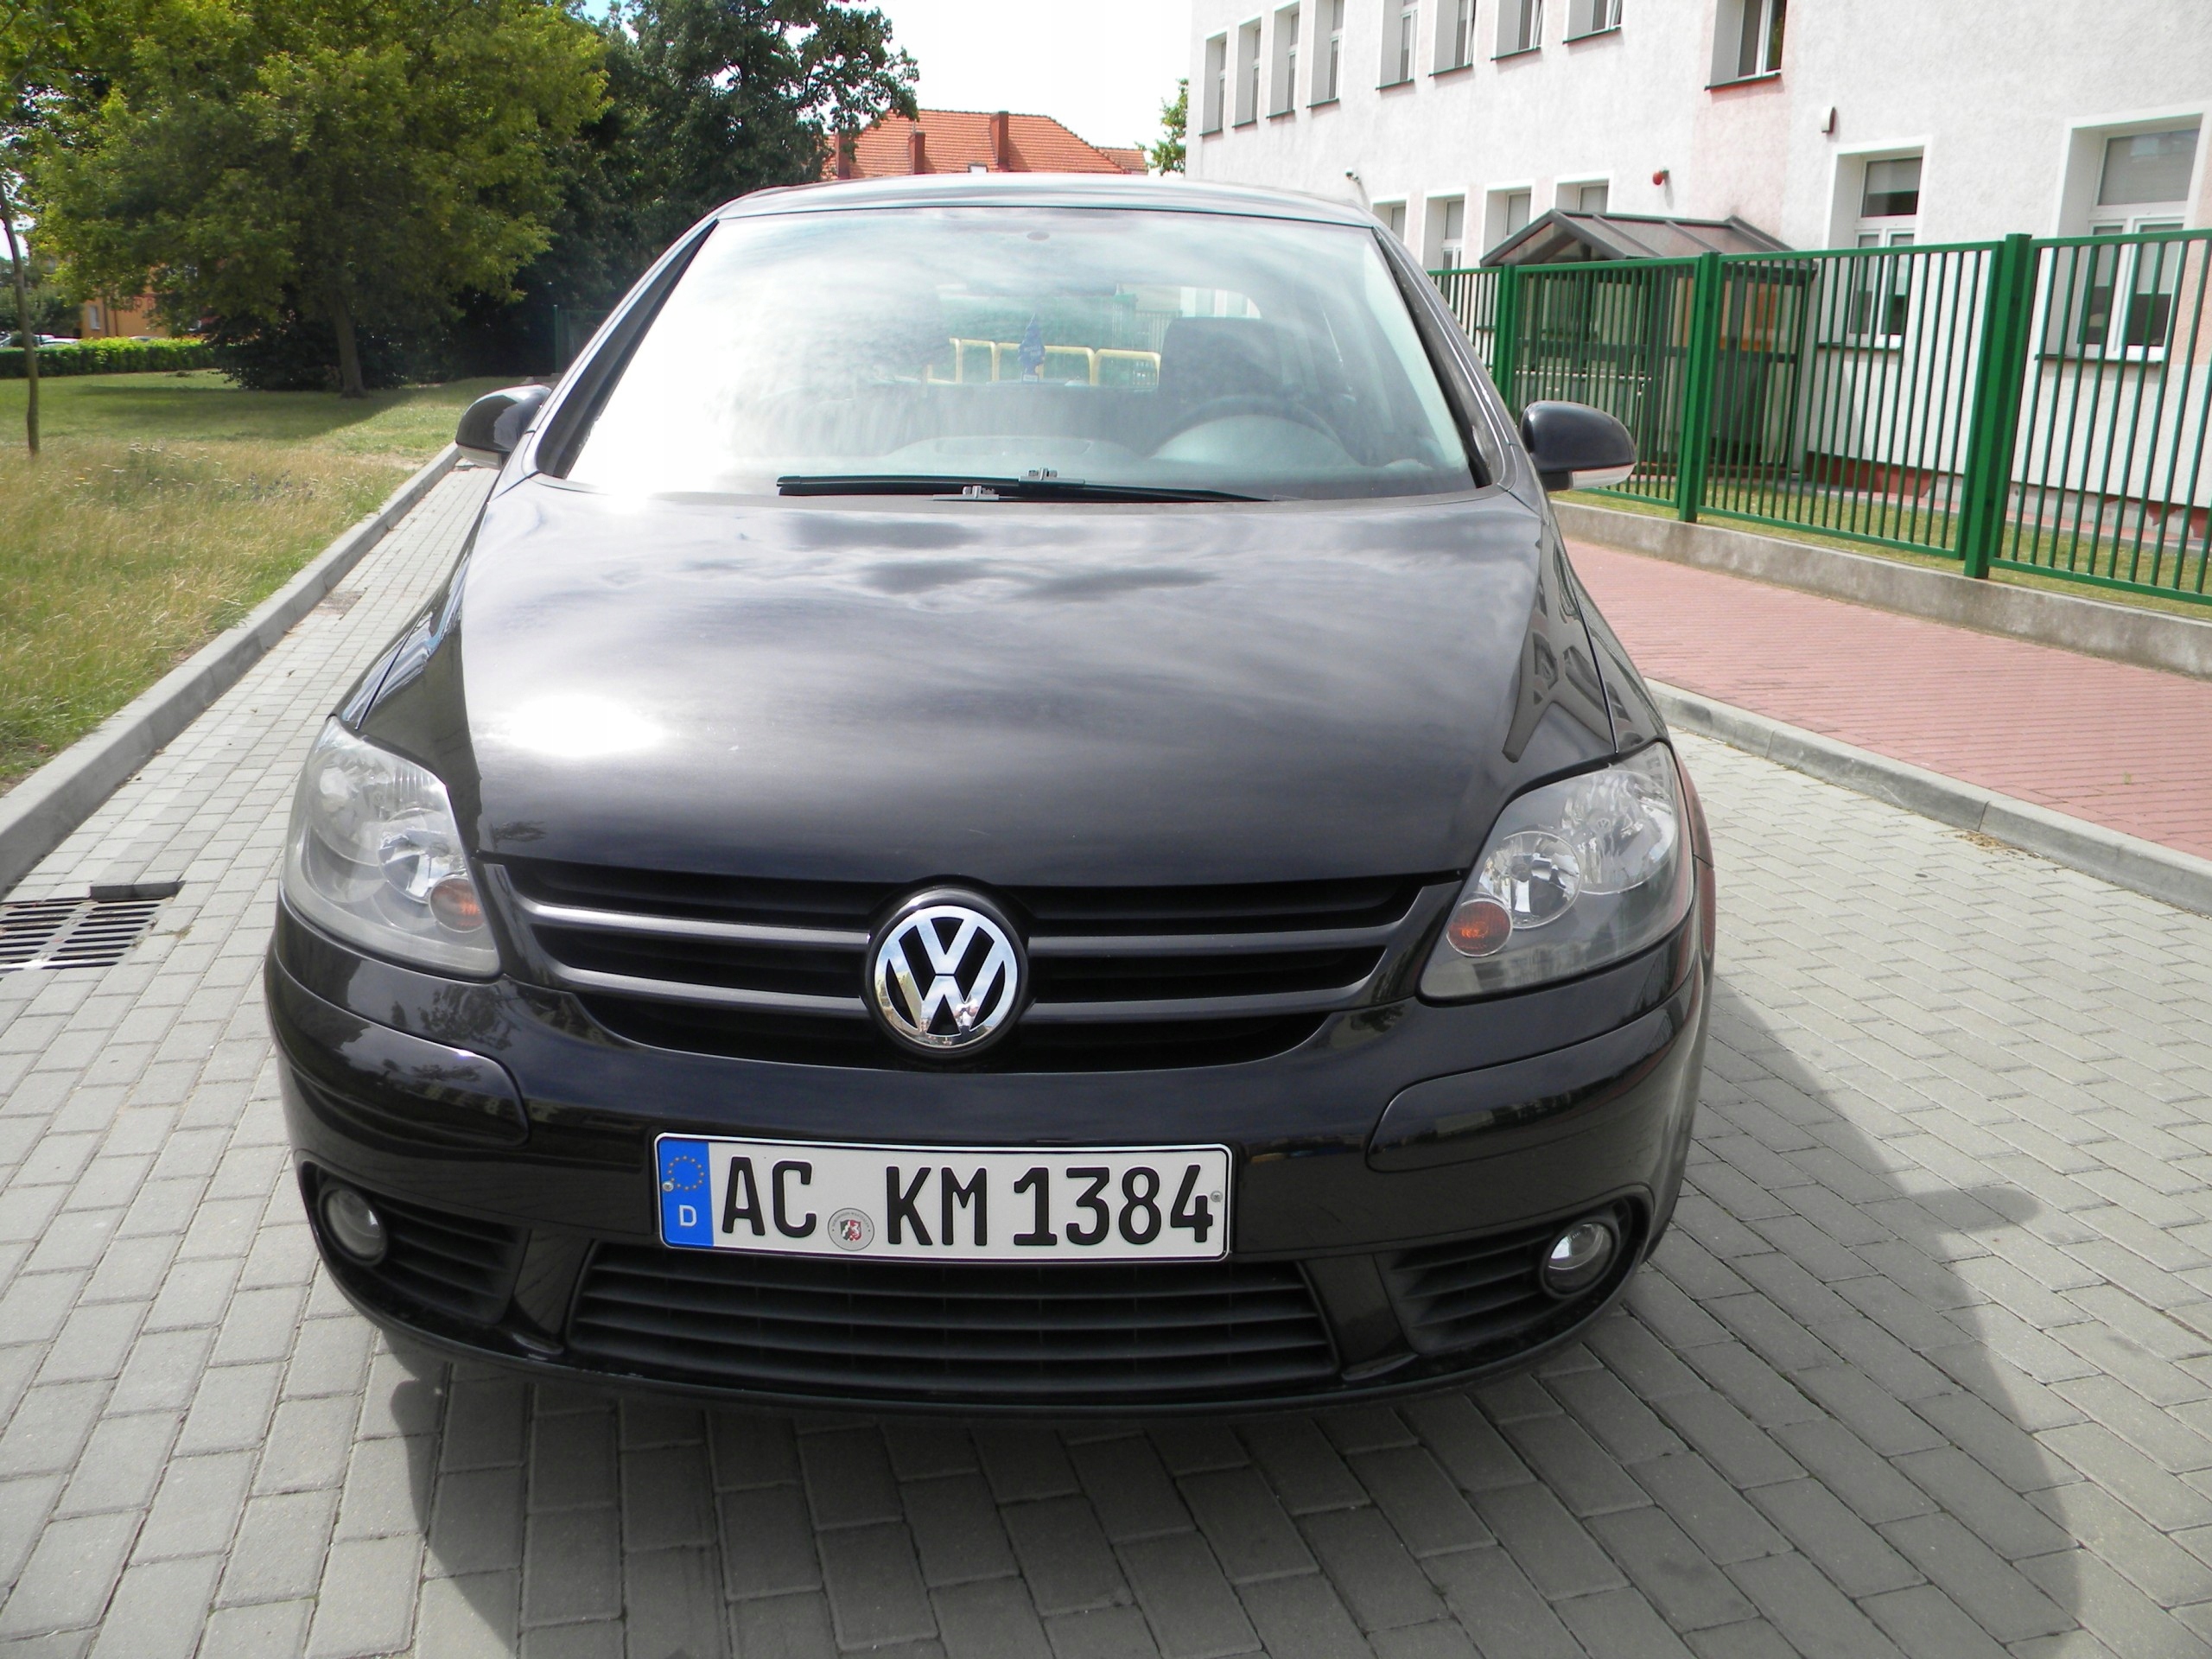 VW Golf V PLUS 1.9 tdi 105 km climatronic opłacony